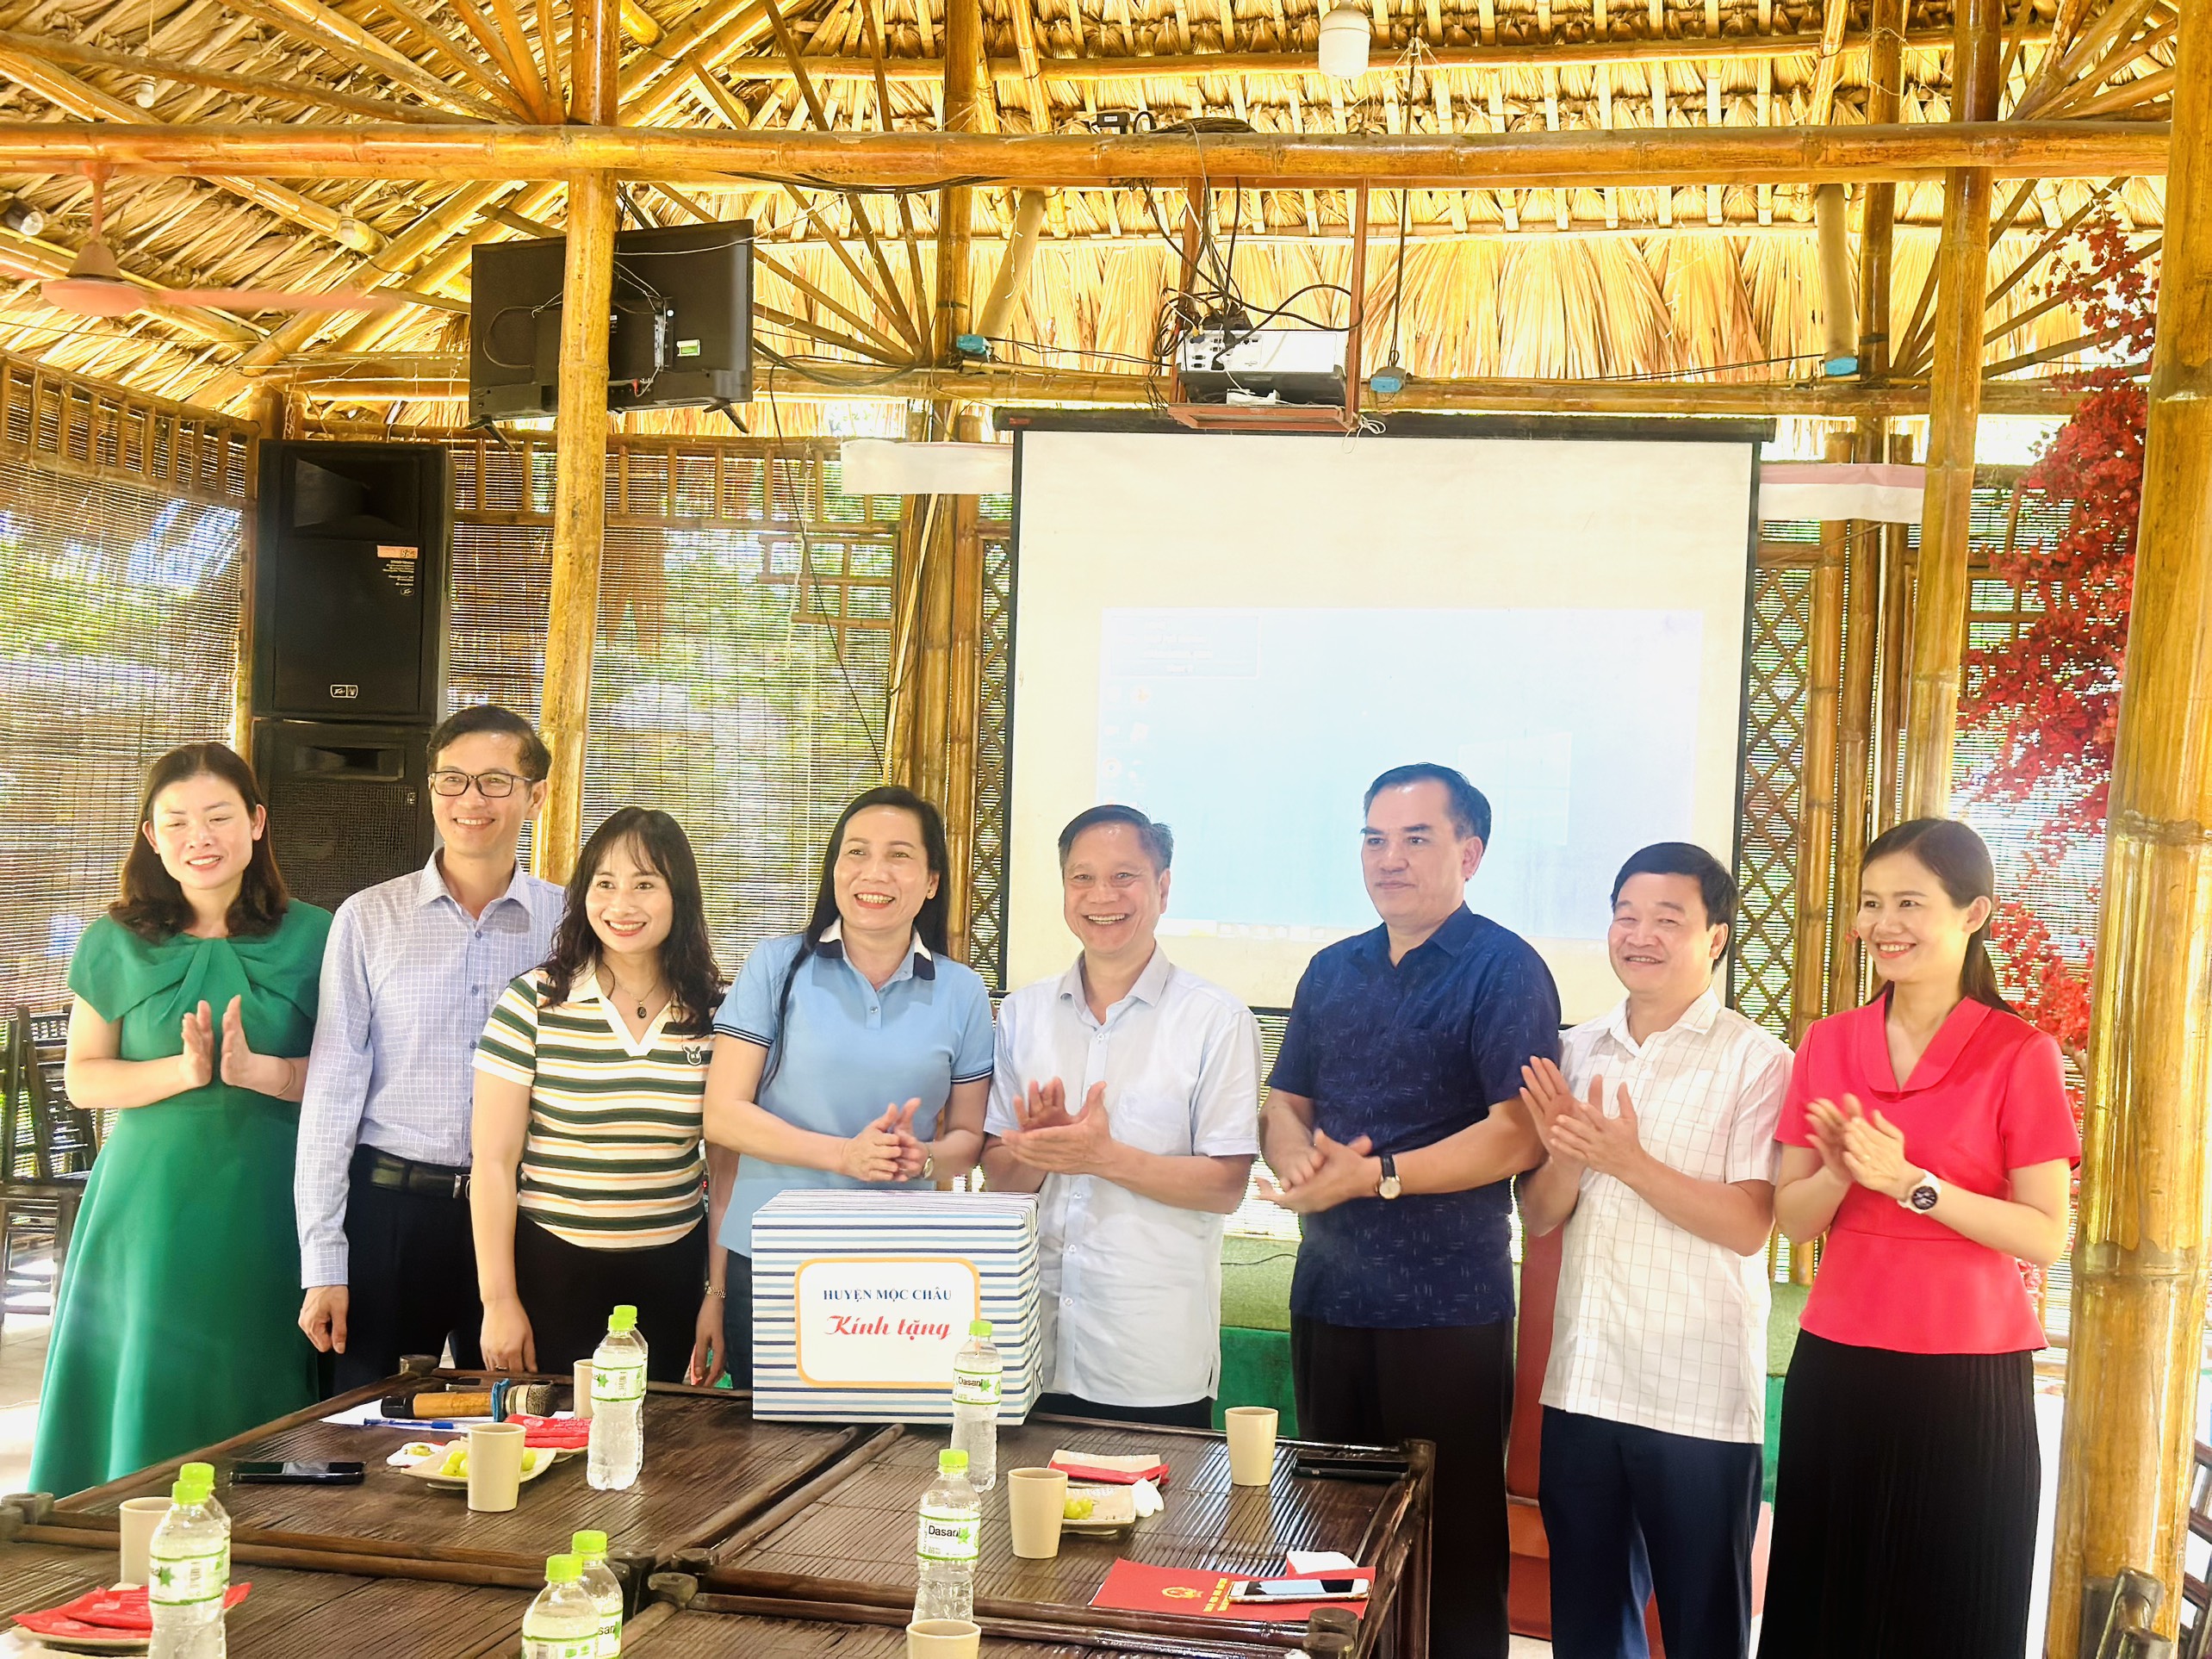 Đoàn công tác huyện Mộc Châu, tỉnh Sơn La học tập kinh nghiệm Chương trình phát triển du lịch nông thôn trong Xây dựng Nông thôn mới tại thành phố